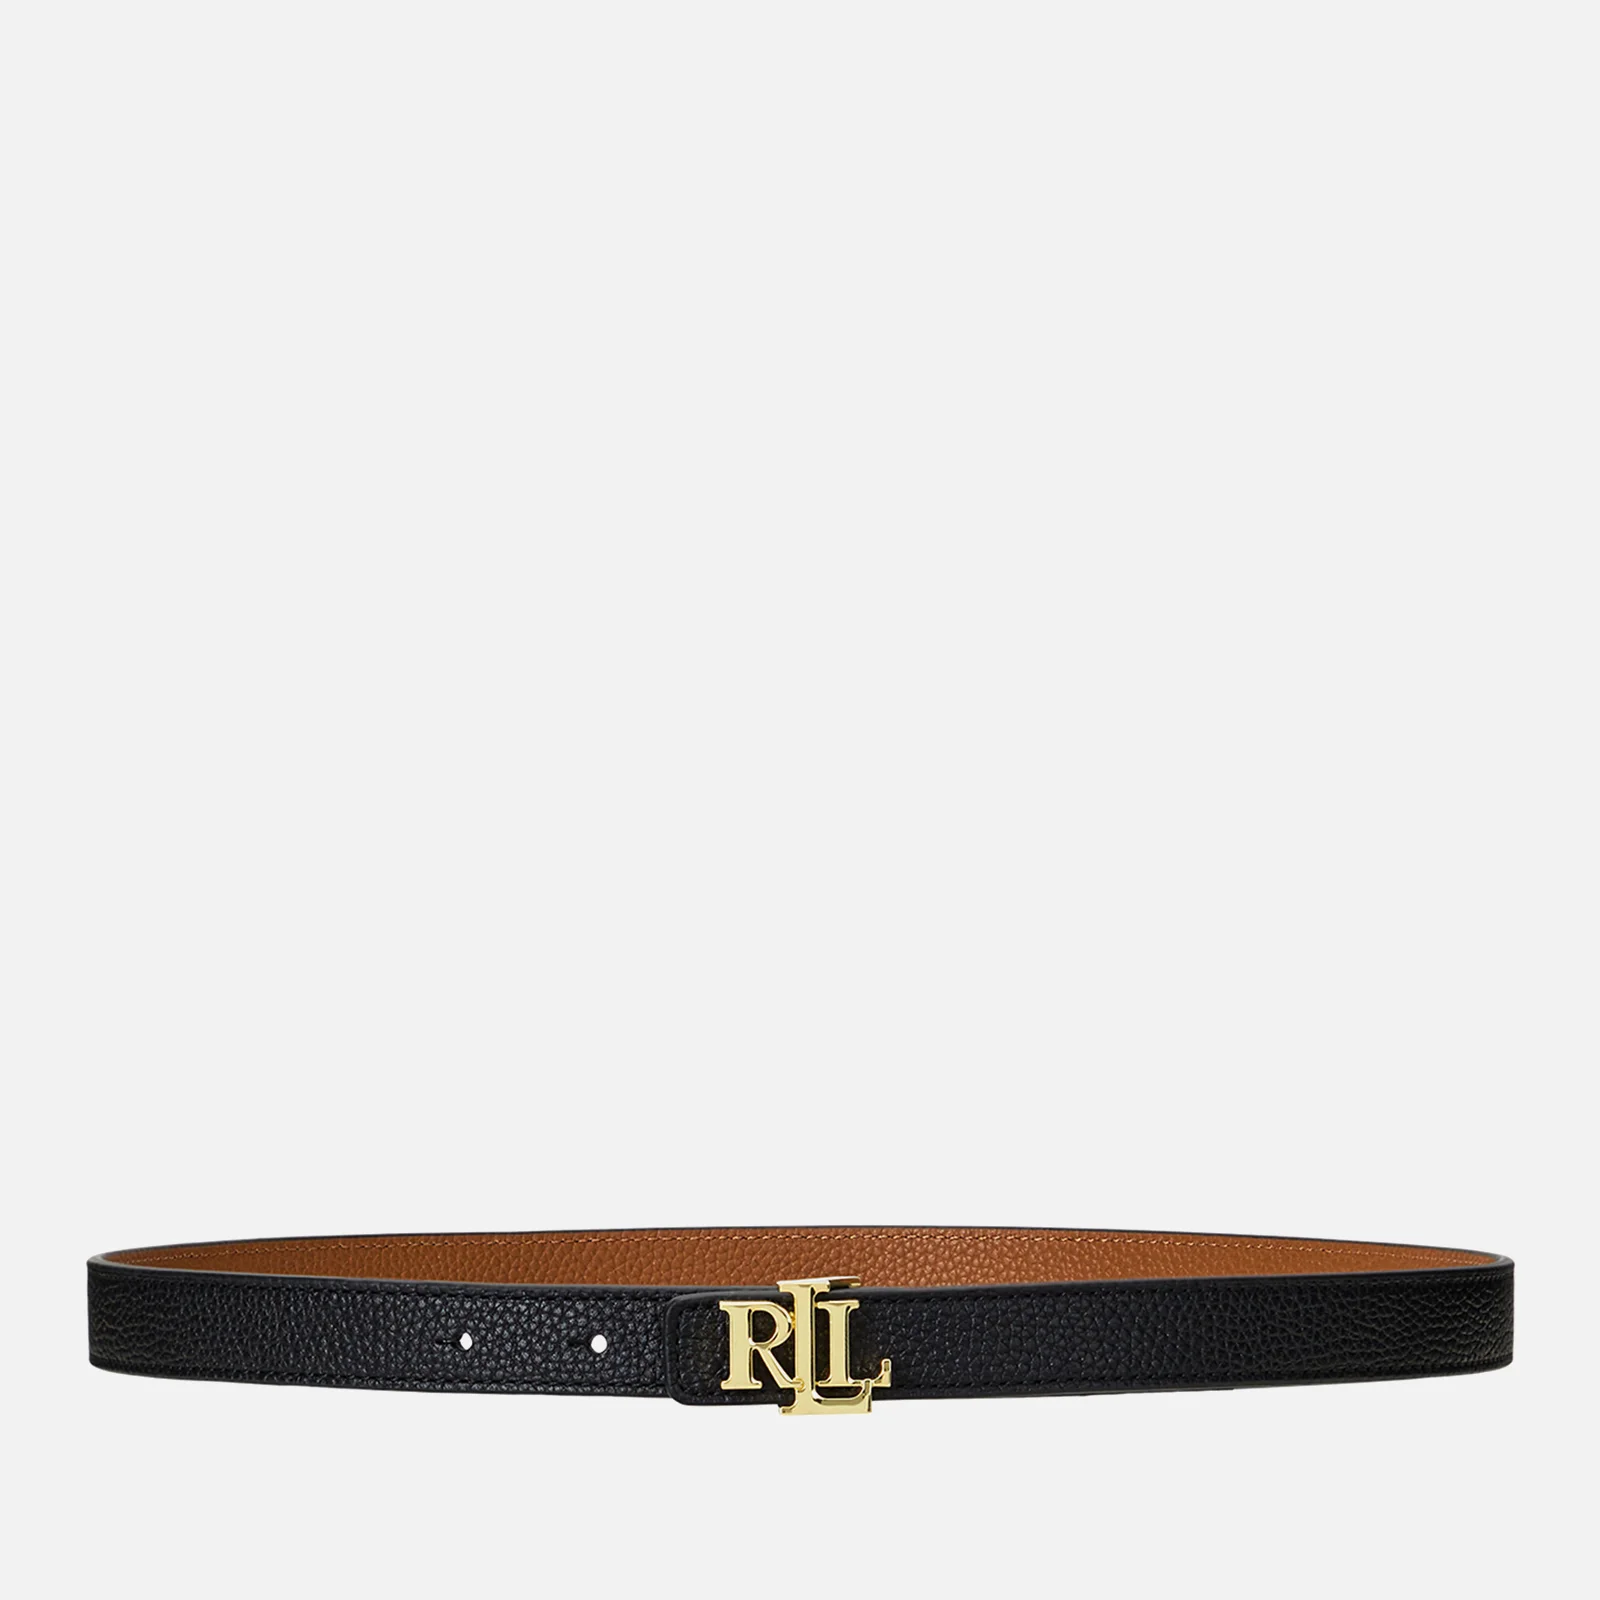 Lauren Ralph Lauren Women's Reversible 20 Skinny Belt - Black/Lauren Tan - L Image 1